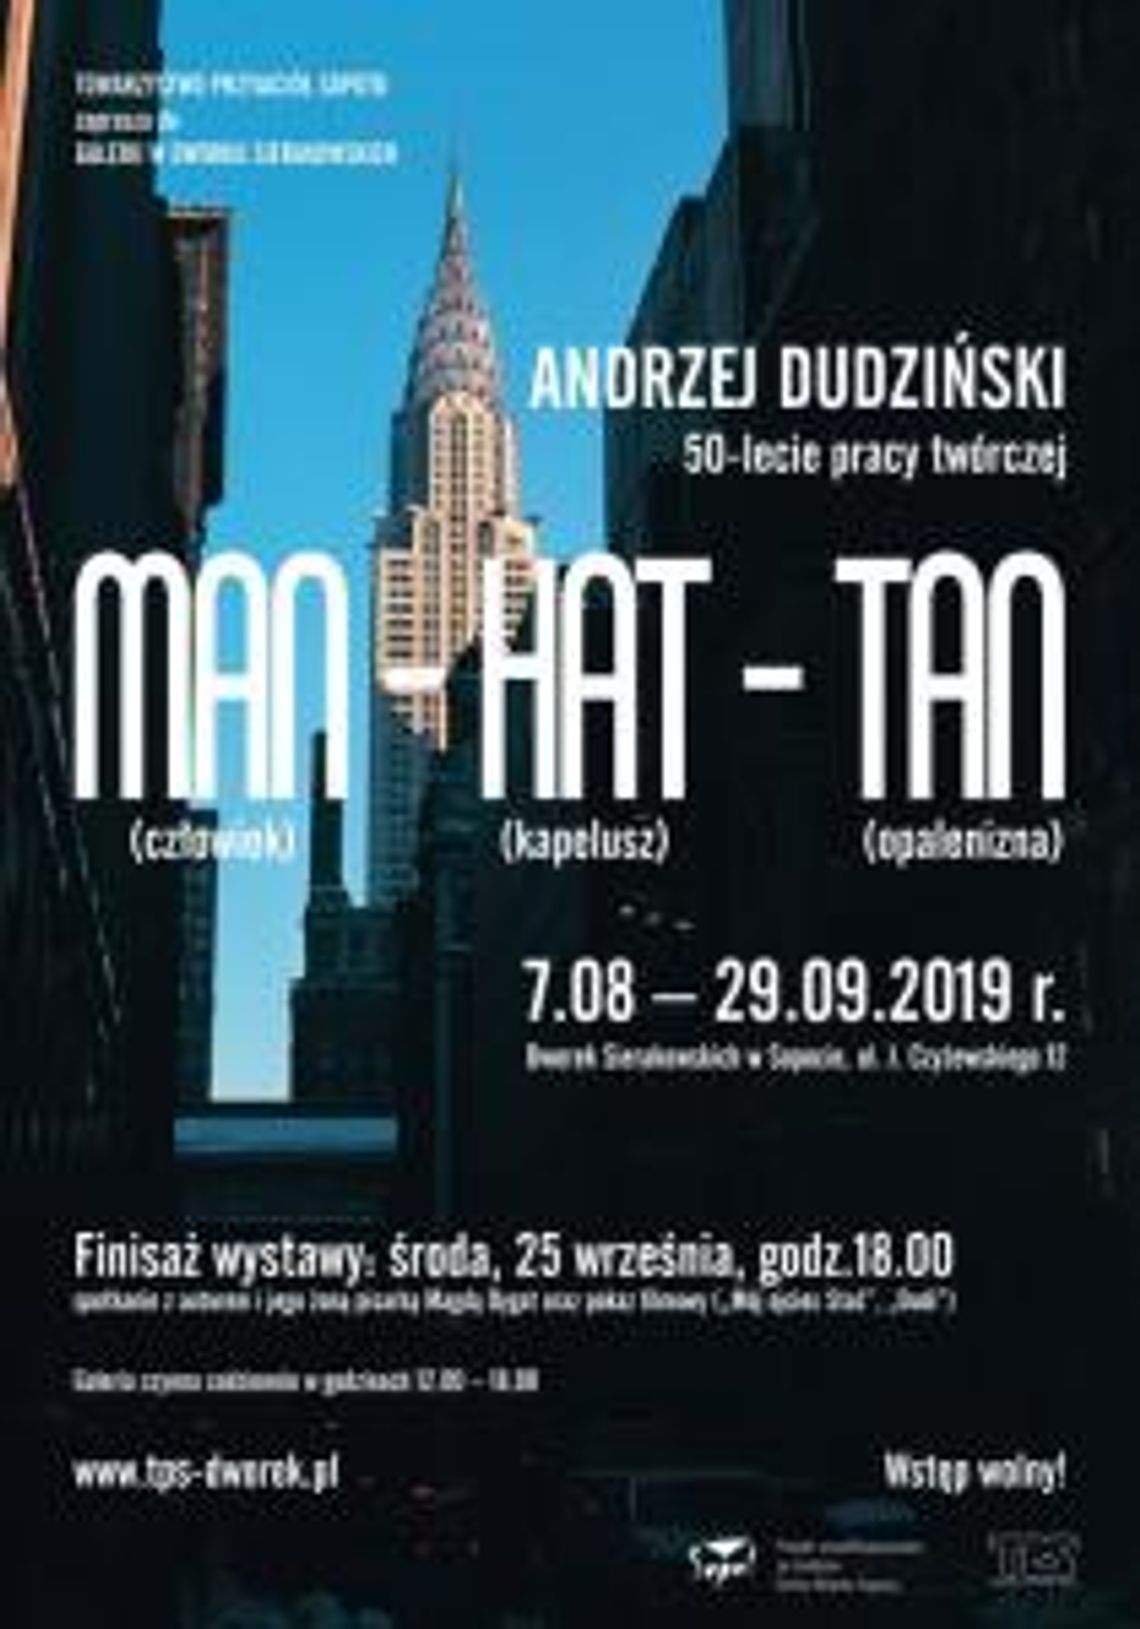 Andrzej Dudziński. Man – hat – tan (człowiek – kapelusz – opalenizna). 50-lecie pracy twórczej. Wystawa